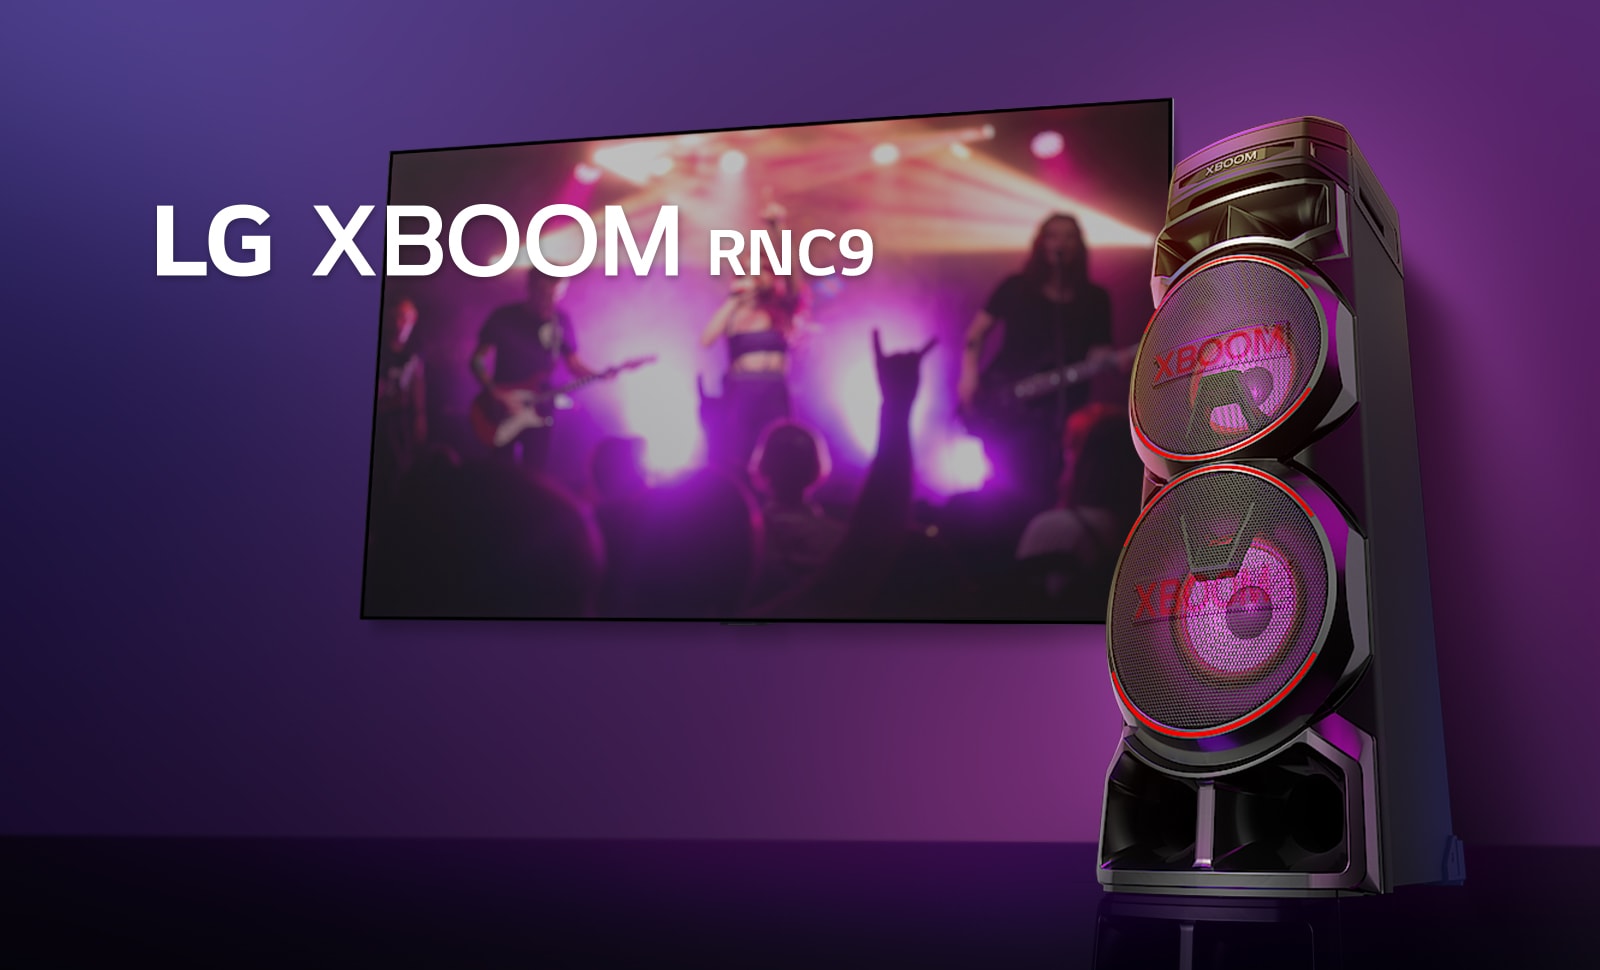 O vedere de jos a lateralei drepte a LG XBOOM RNC9 pe un fundal violet. Luminile XBOOM sunt, de asemenea, violet. Și un ecran TV afișează o scenă de concert.